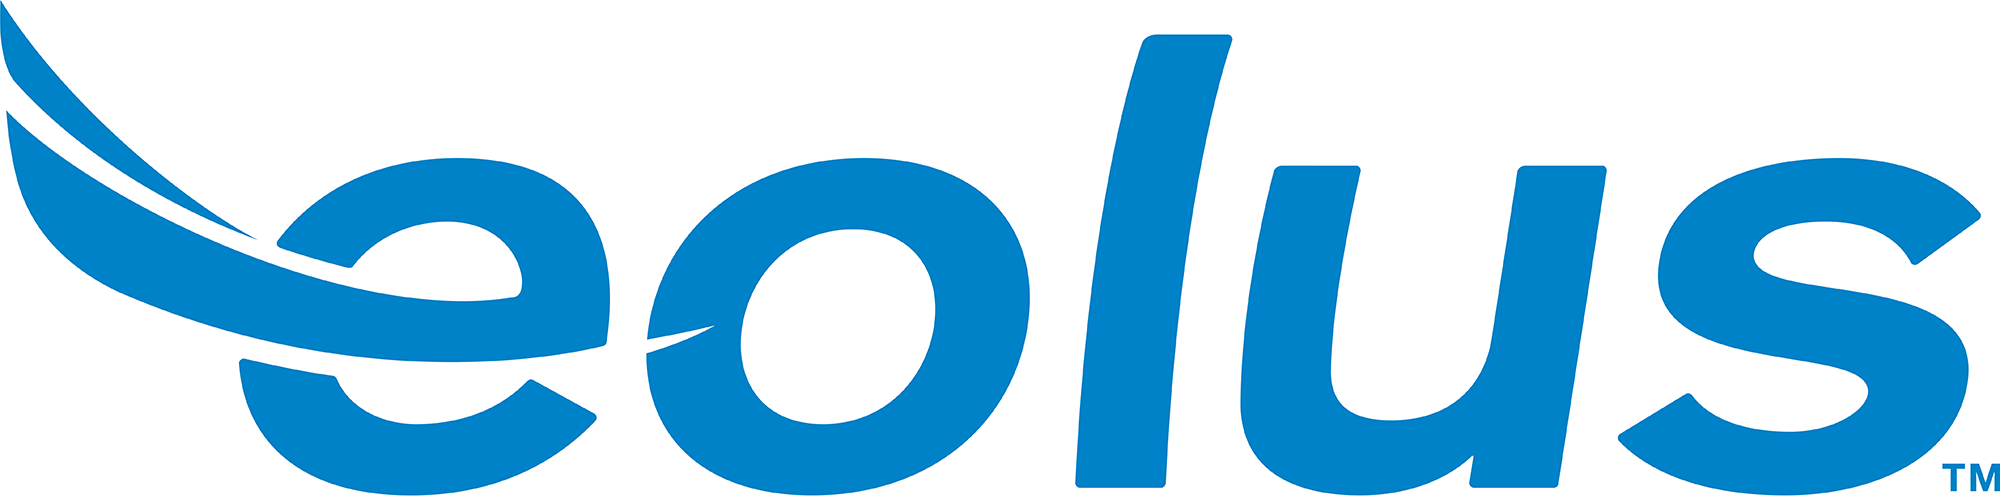 Eolus Company Logo